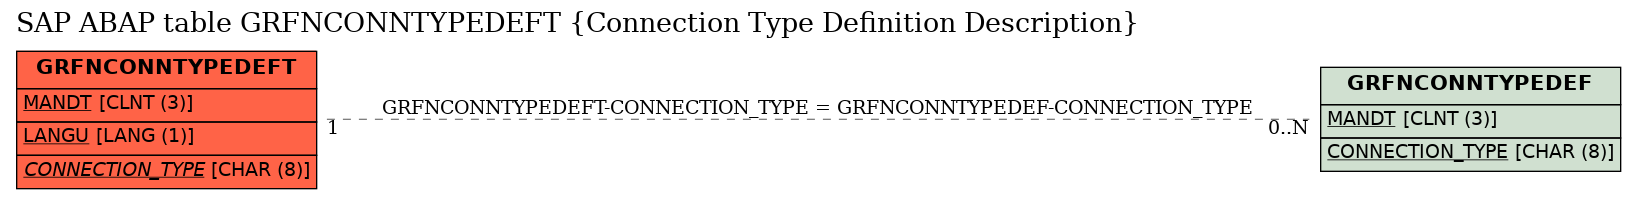 E-R Diagram for table GRFNCONNTYPEDEFT (Connection Type Definition Description)